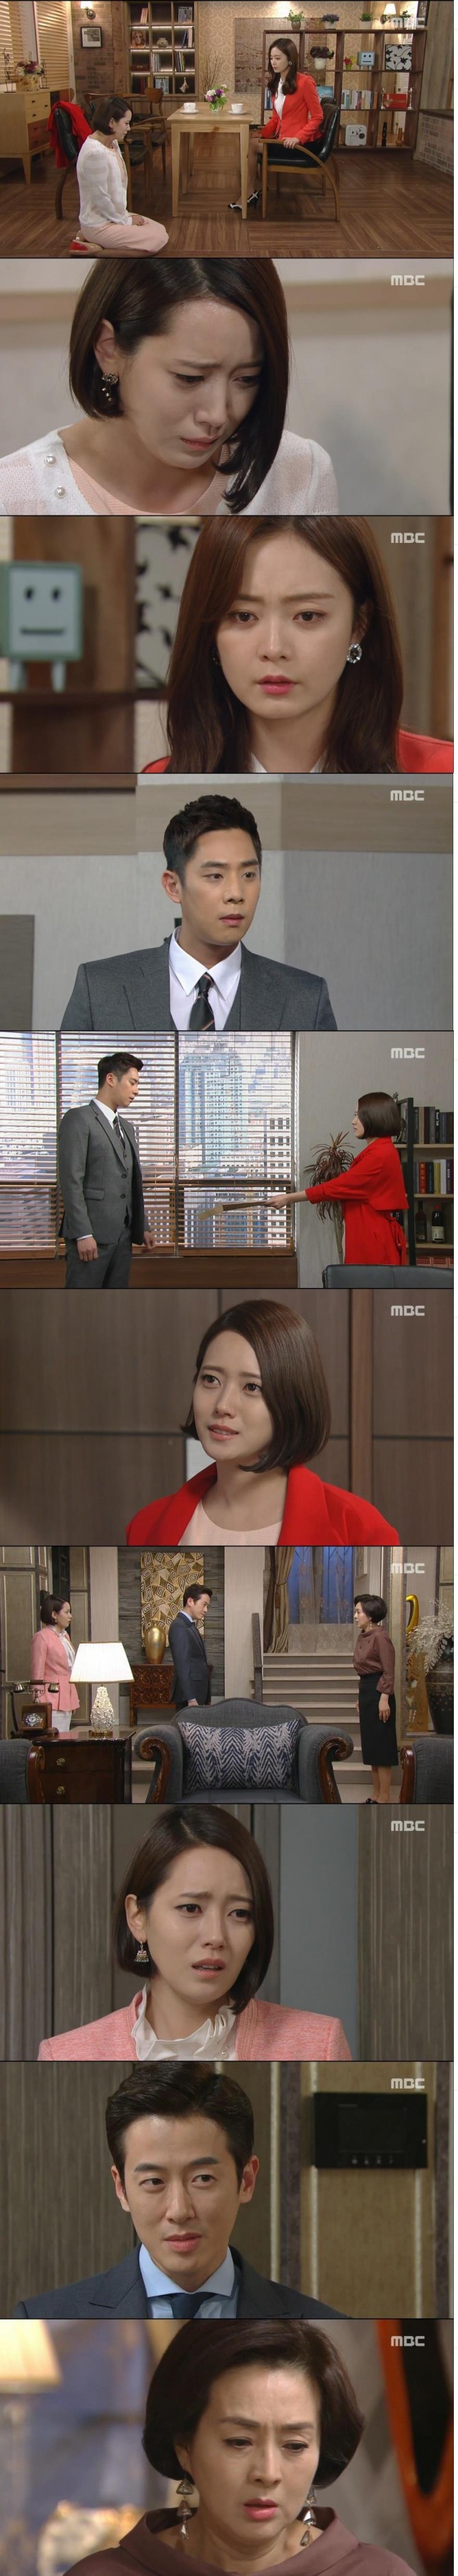 21일 아침 방송된 MBC 일일드라마 '내일도 승리'에서 서재경(유호린)은 마침내 자신의 죄를 깊이 뉘우치고 한승리(전소민)에게 무릎을 꿇고 사죄했다./사진=MBC 방송 캡처